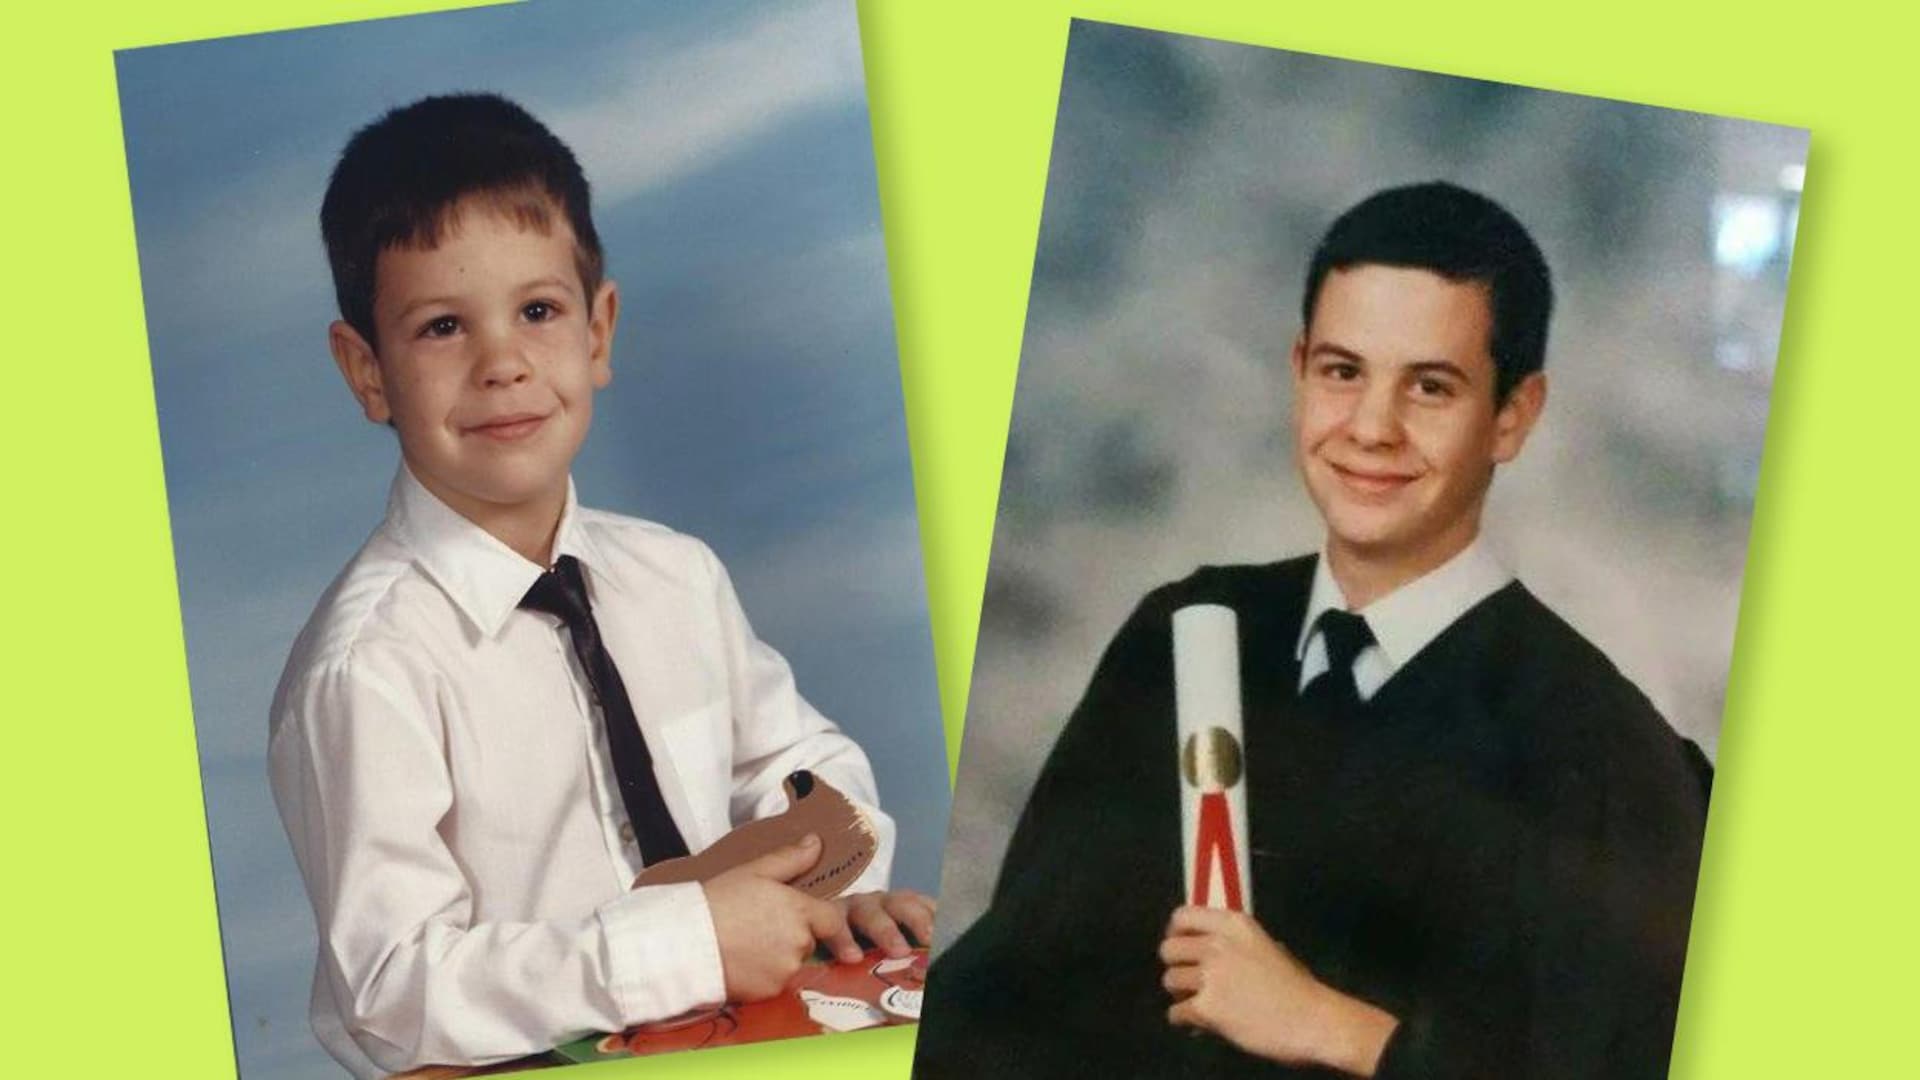 On voit deux photos de lui dans sa jeunesse au primaire et en graduation